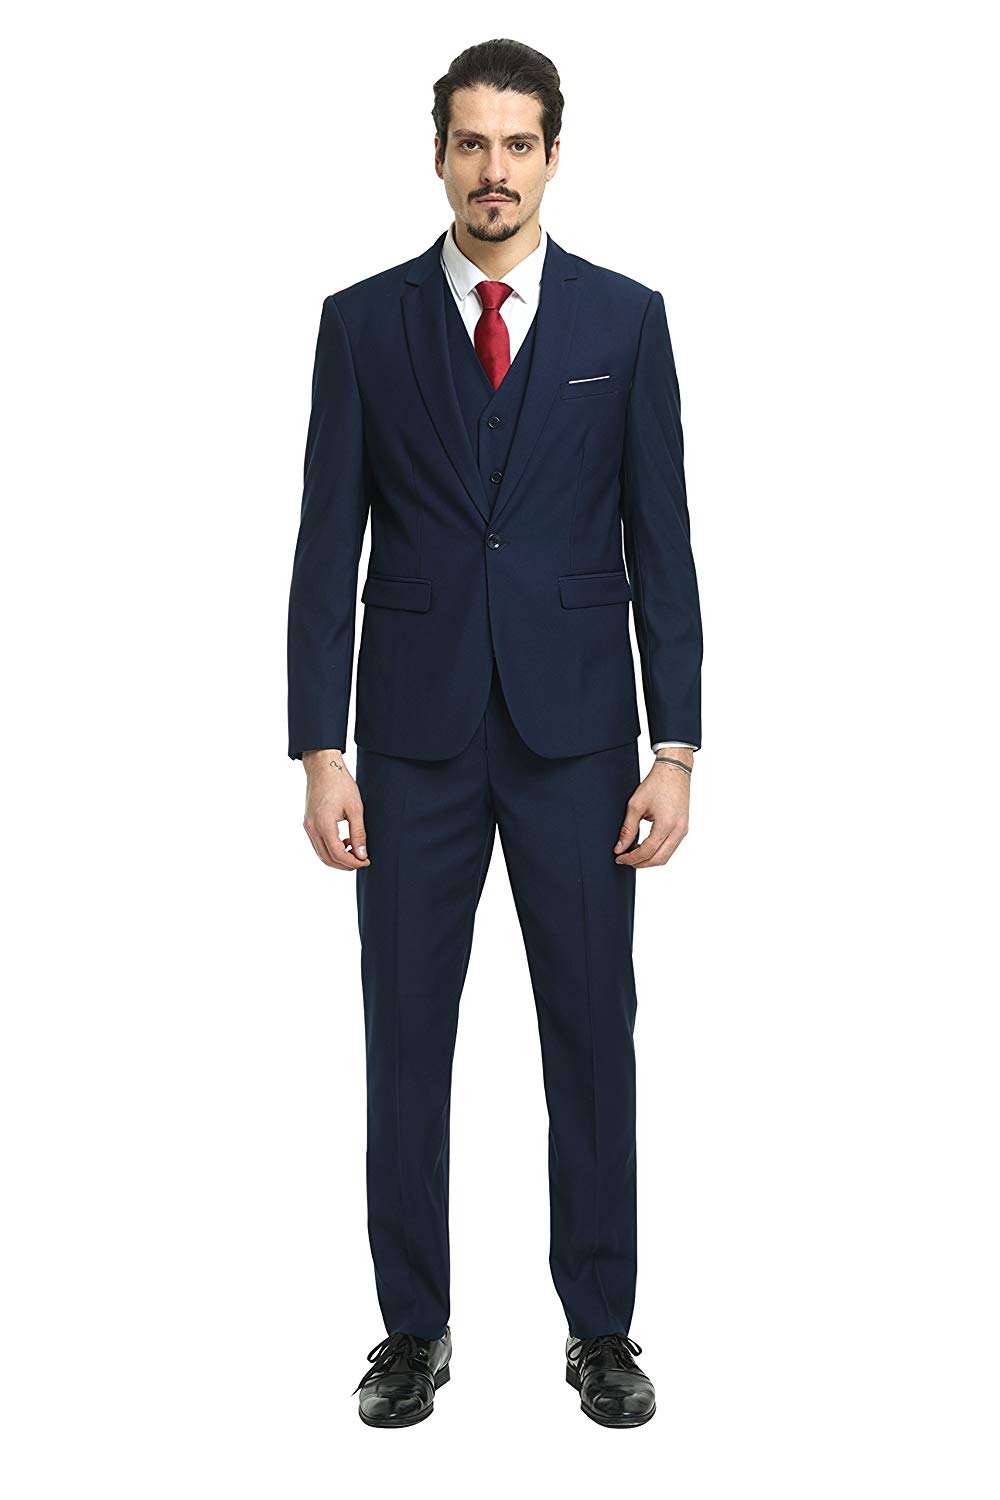 Nitree Men Suits Slim Fit 3 Piece One Button Suit Blazer Tux Vest & Trousers Tuxedo